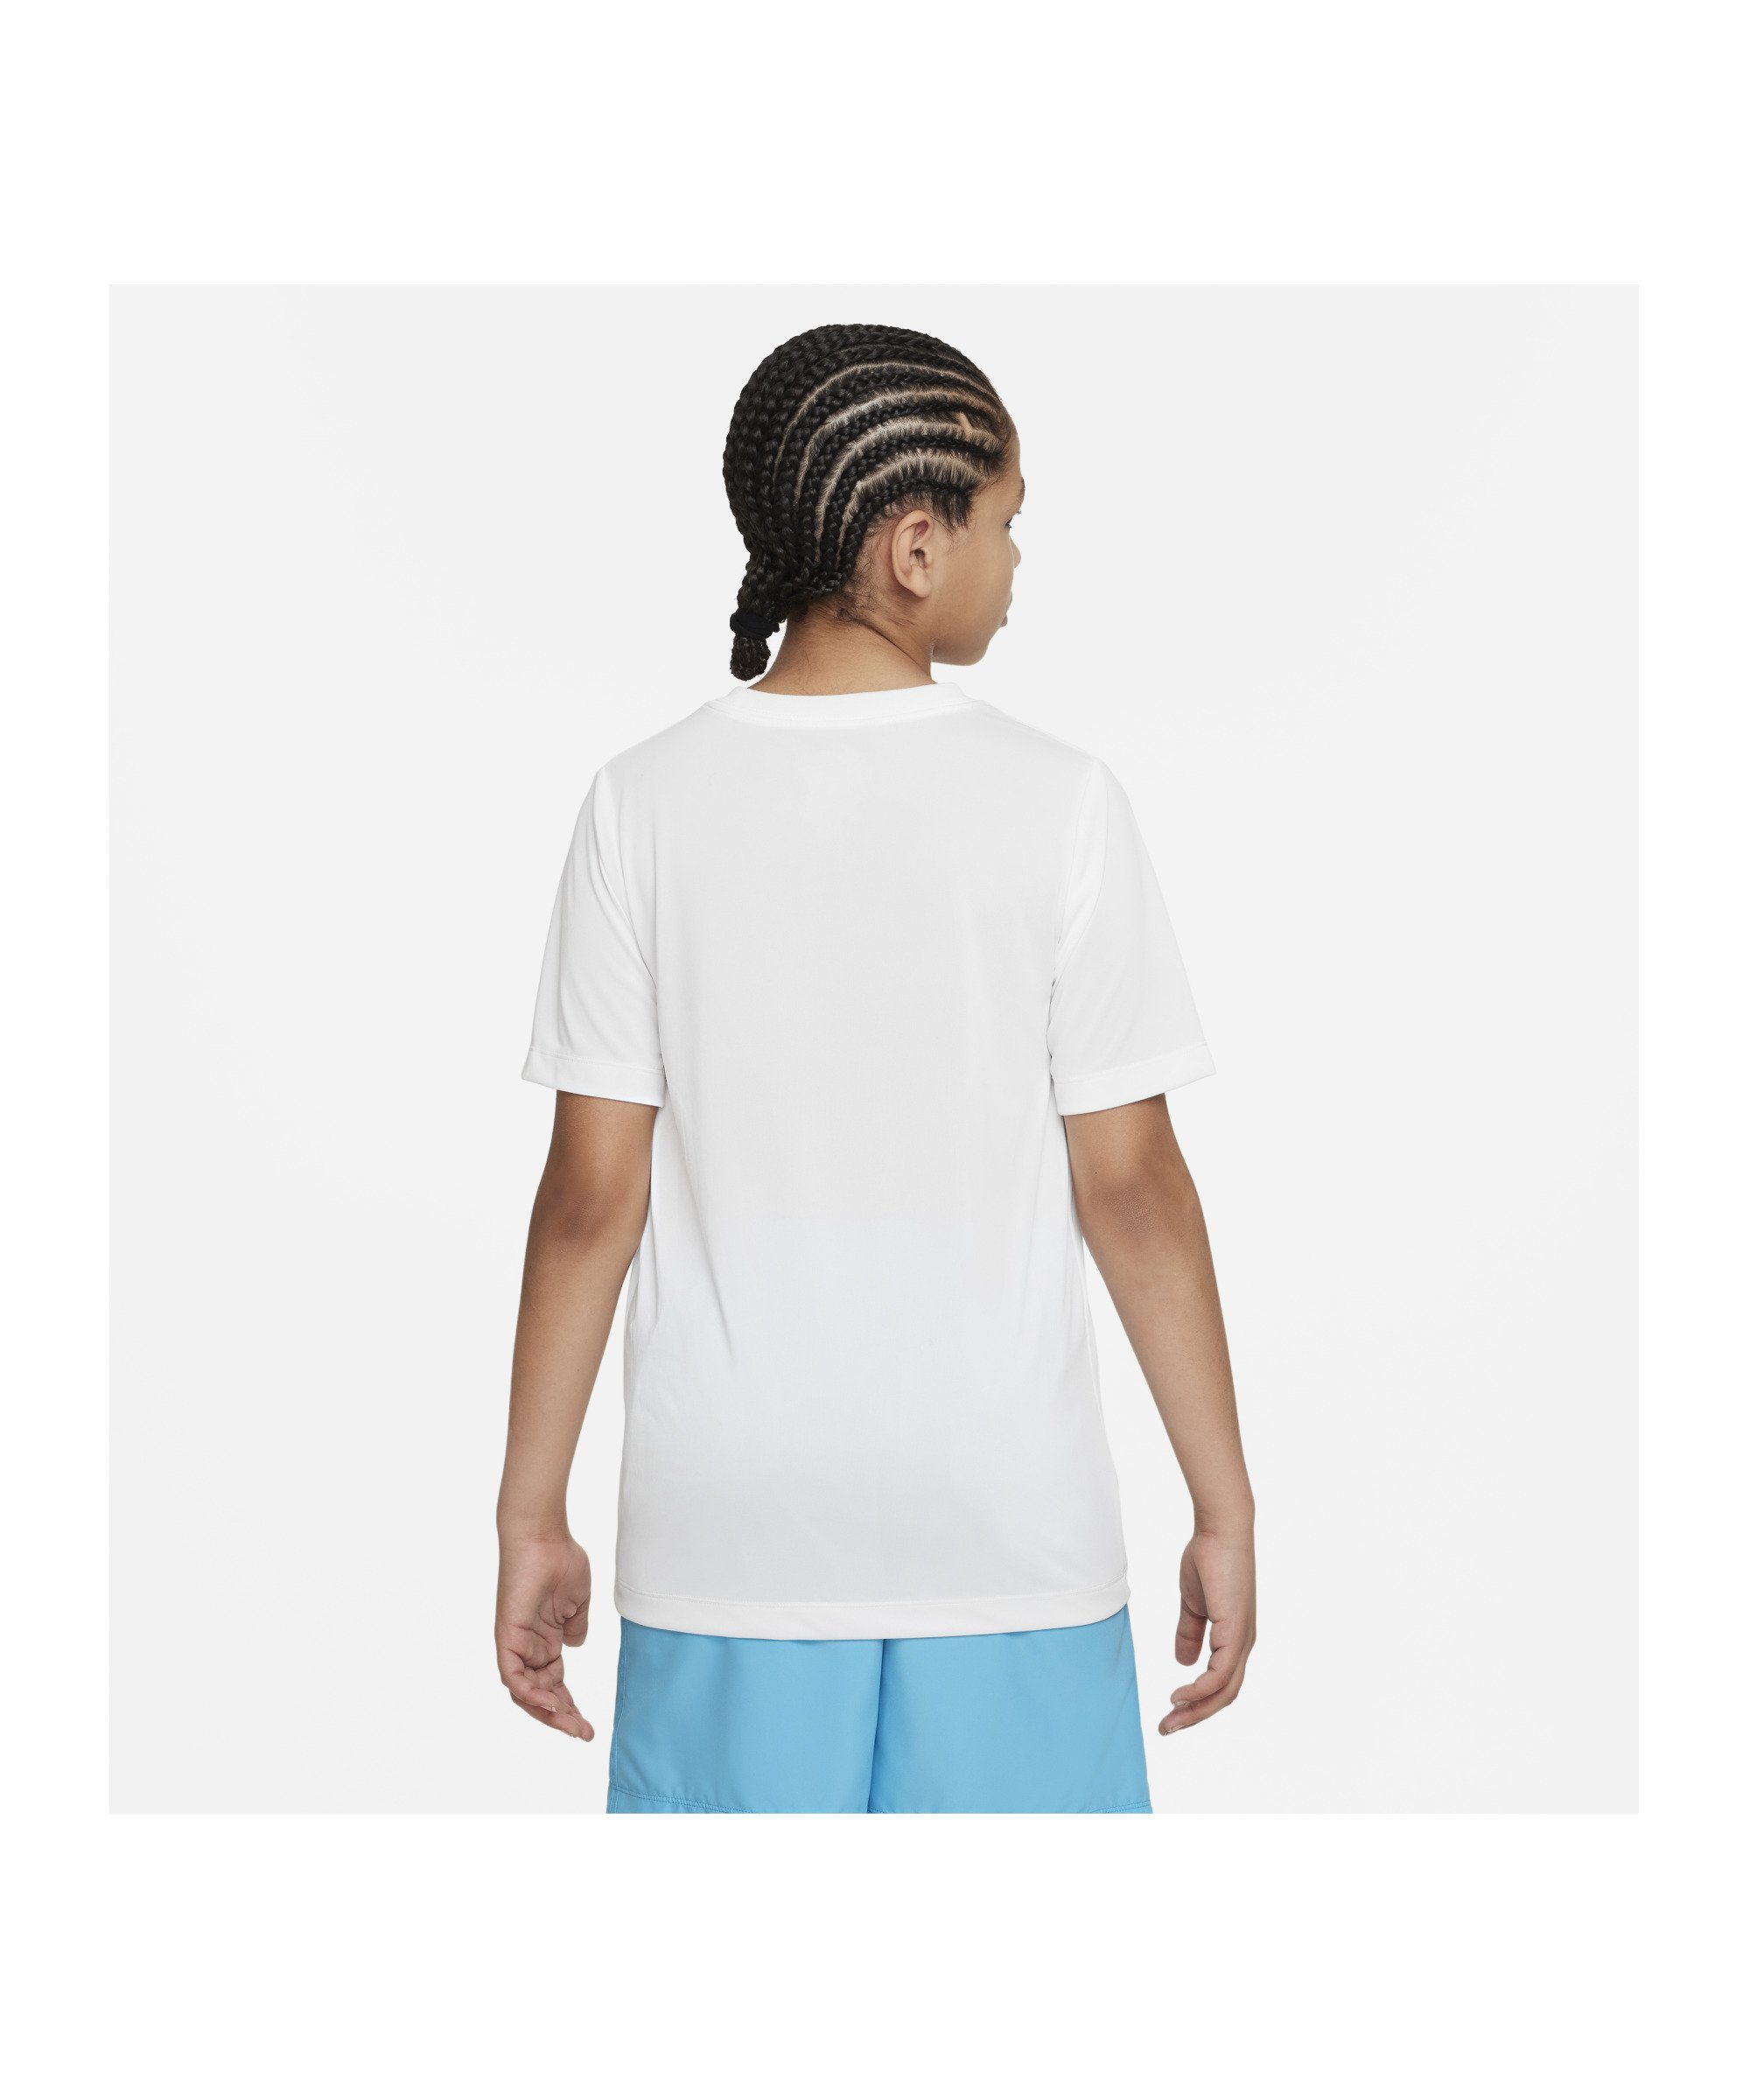 Training Laufshirt default weiss Nike Kids T-Shirt